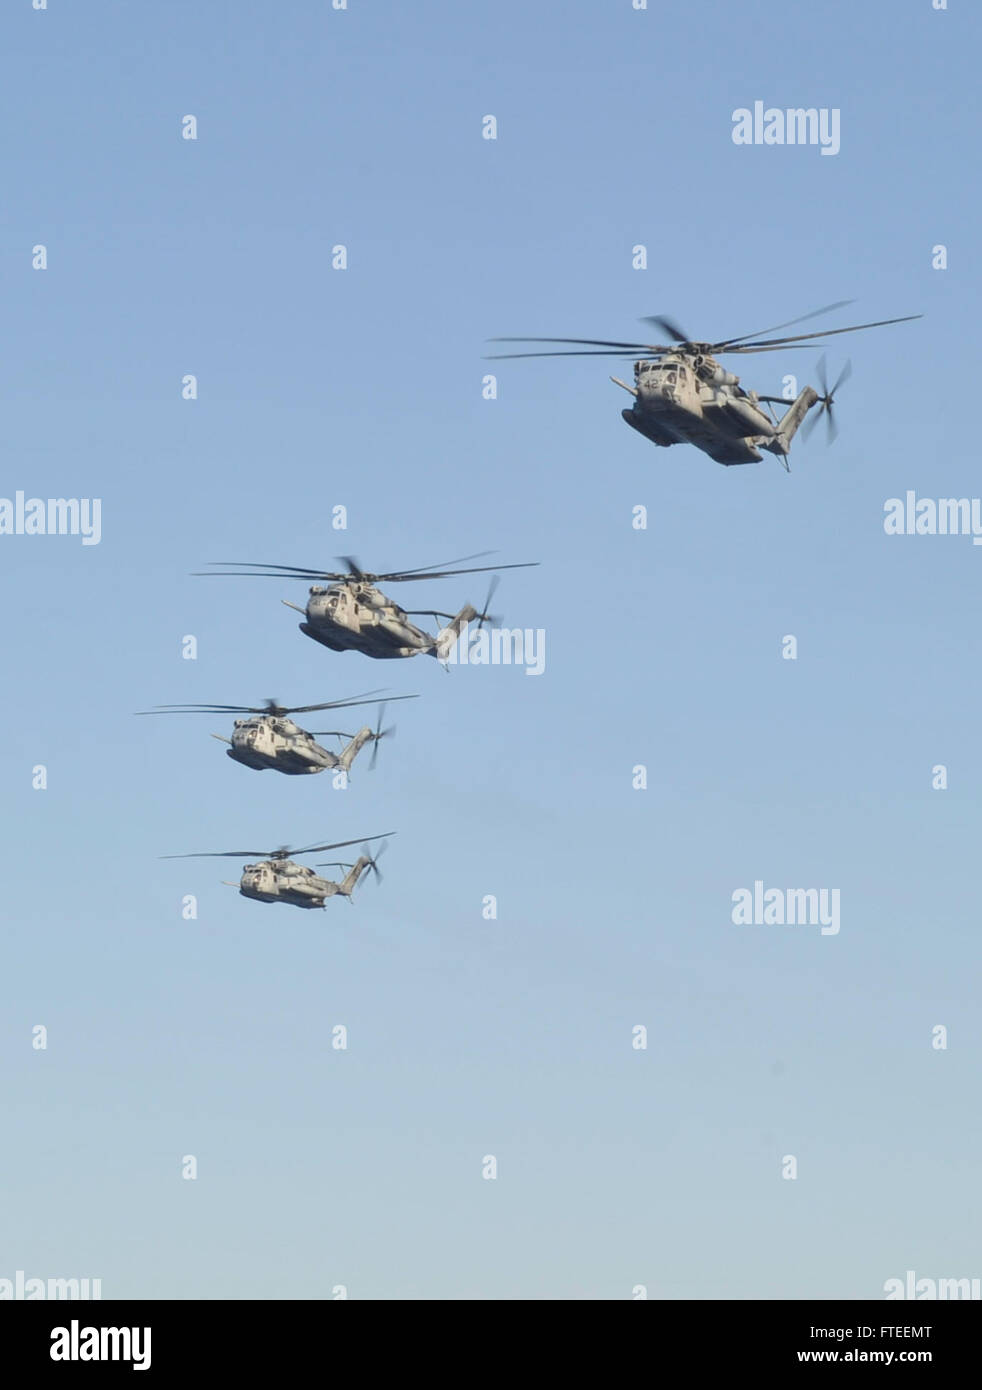 140605-N-AO823-027-Mittelmeer (5. Juni 2014)--vier CH-53 Super Hengste tragen Post nähern Mehrzweck amphibischer Angriff Schiff USS Bataan (LHD-5).  Bataan, mit Elementen aus der 22. Marine Expeditionary Unit ist in den USA operierende 6. Flotte von Operationen, die Reaktion auf die Krise der USA erweitern der Kräfte in der Region. (Foto: U.S. Navy Masse Kommunikation Spezialist Seemann Lehrling Michael J. Lieberknecht / veröffentlicht) www.facebook.com/ussbataan (http://www.facebook.com/ussbataan) Stockfoto